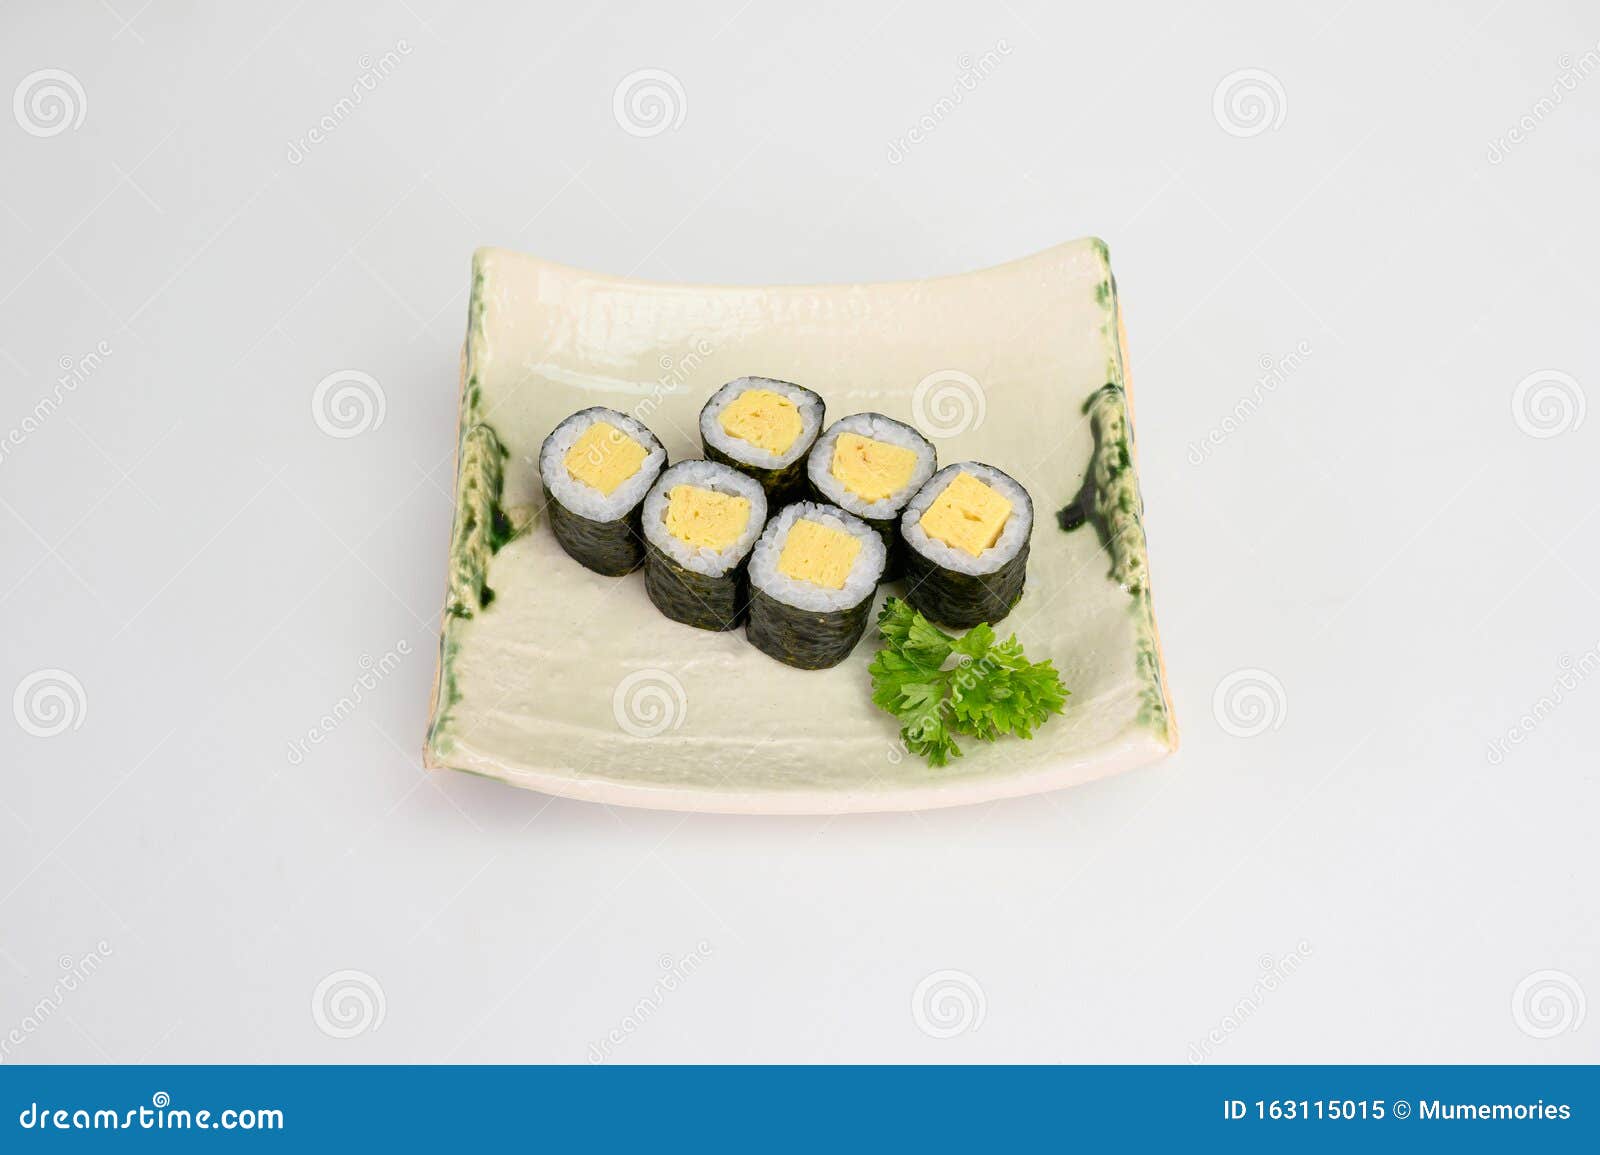 Tamago maki sushi king